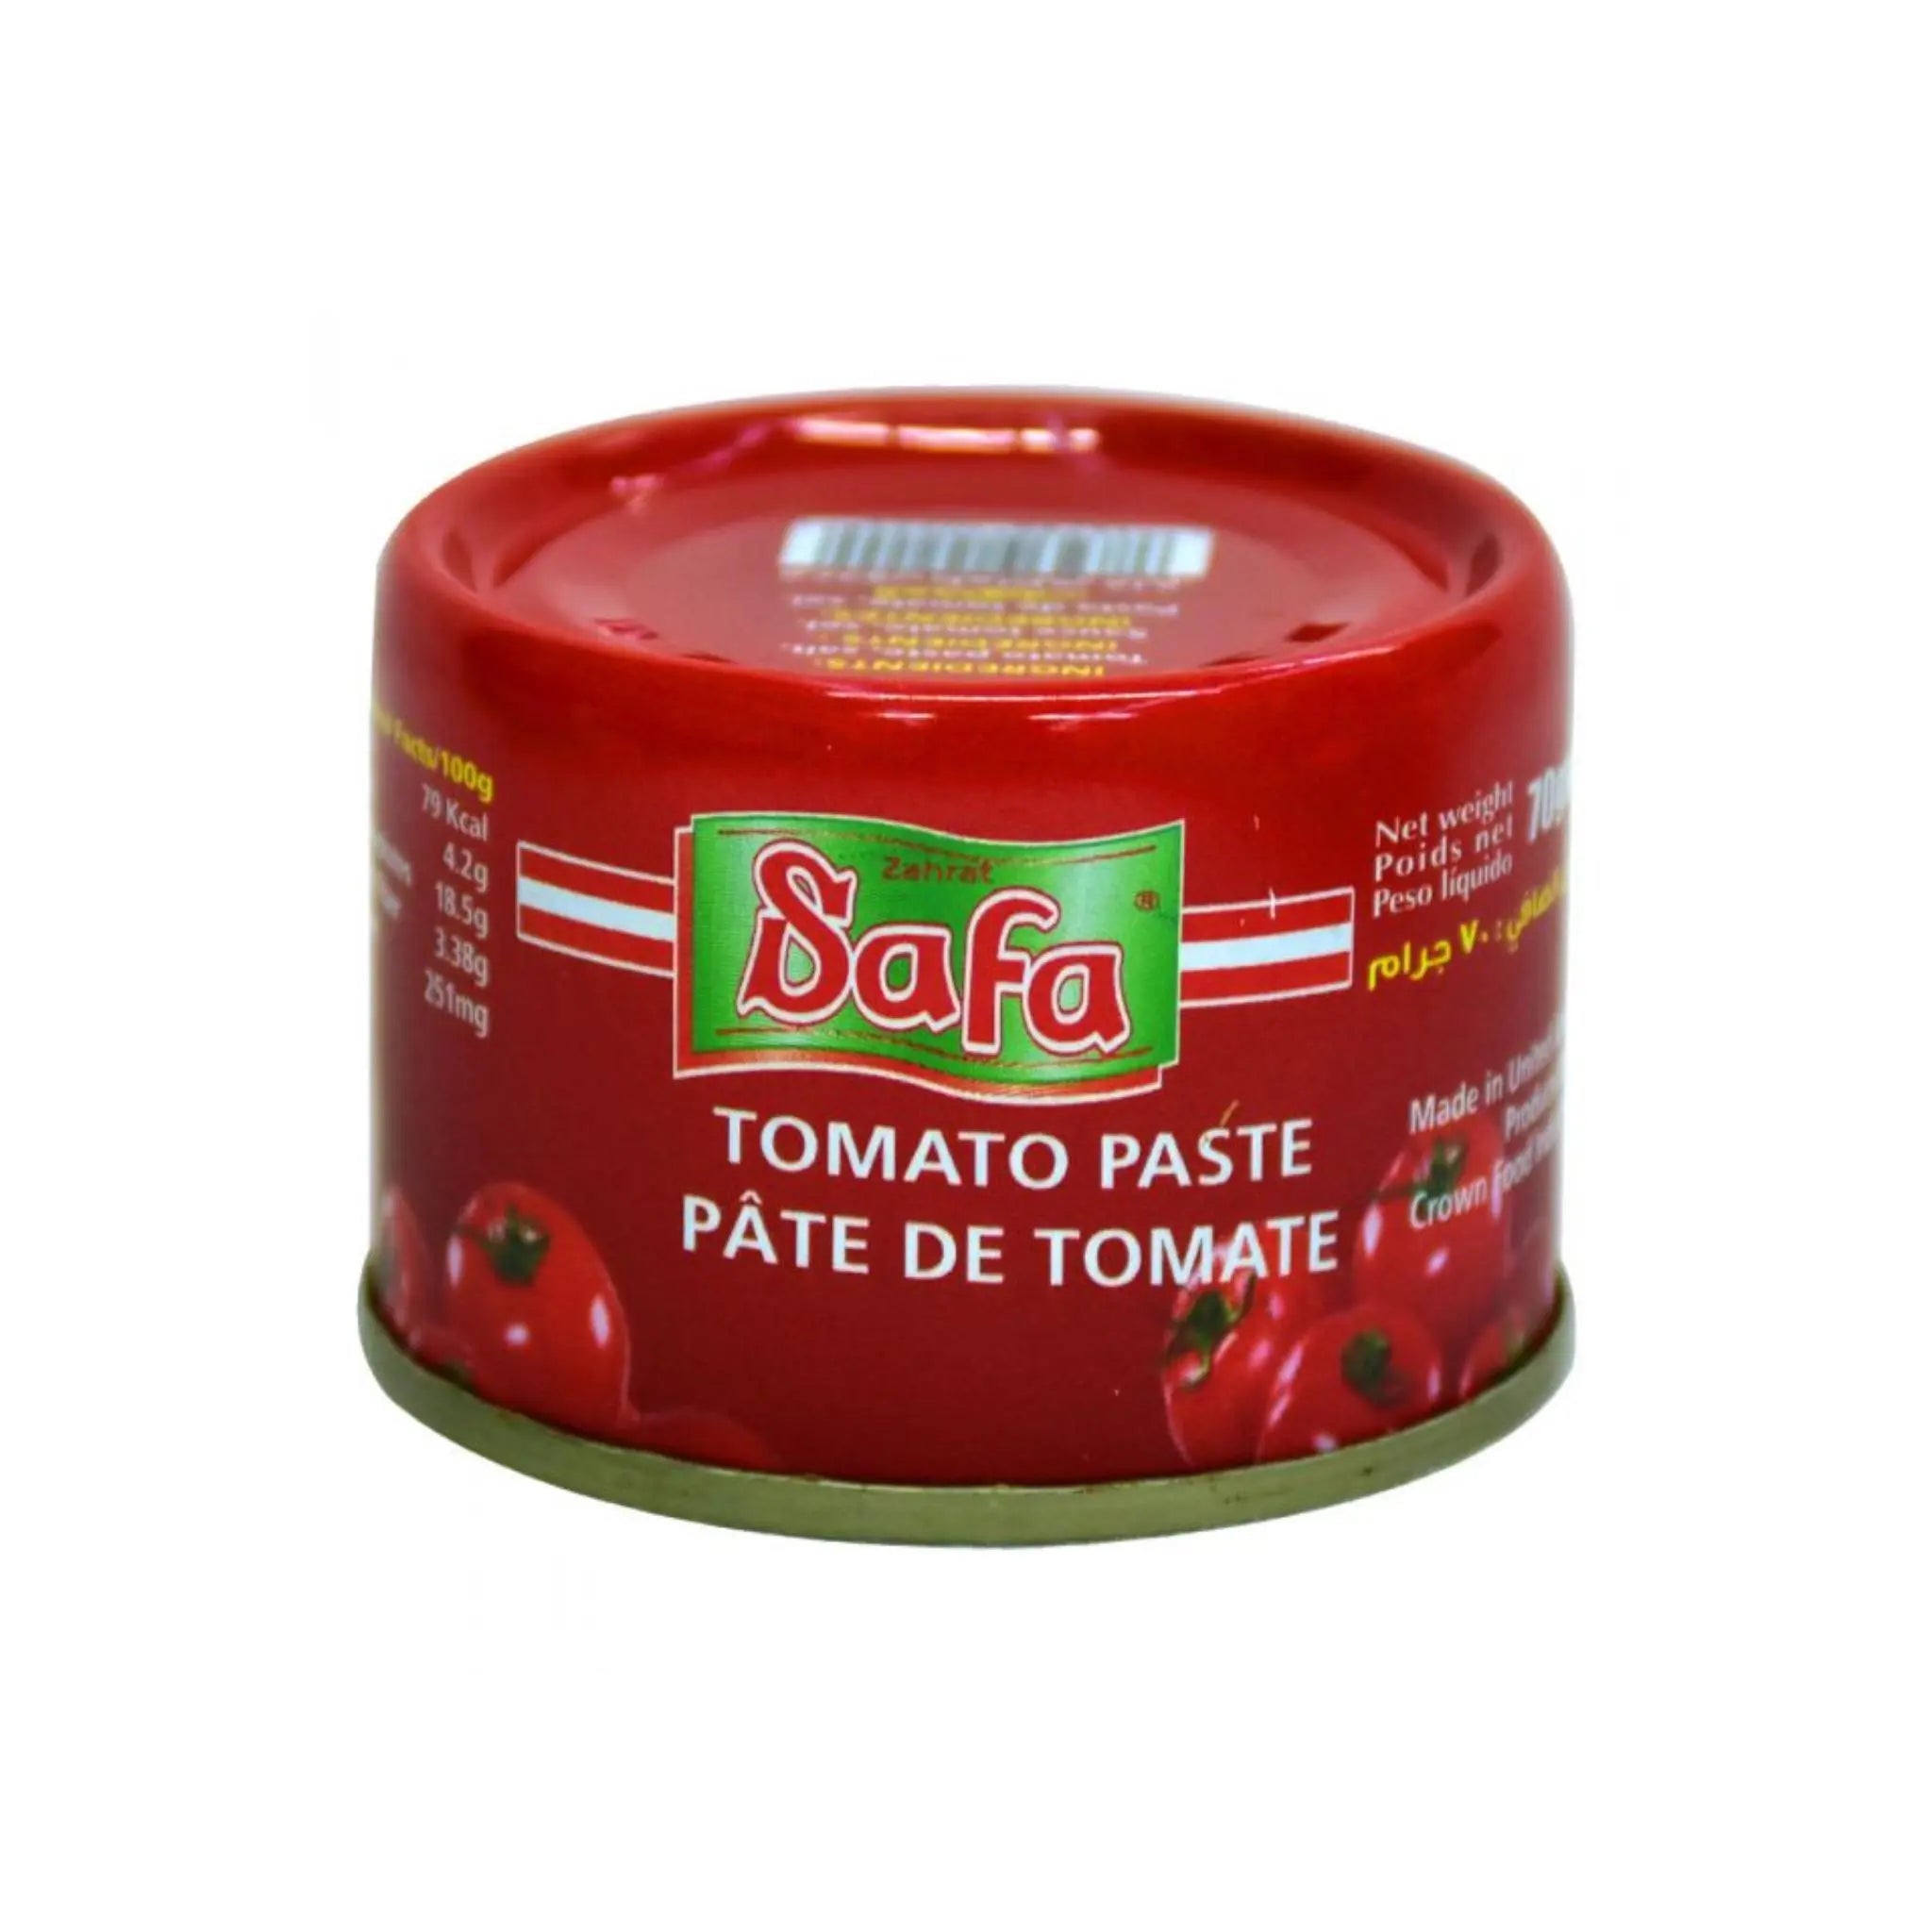 Zahrat Safa Tomato Paste 18/20 - 70gx100 (1 carton) Marino.AE